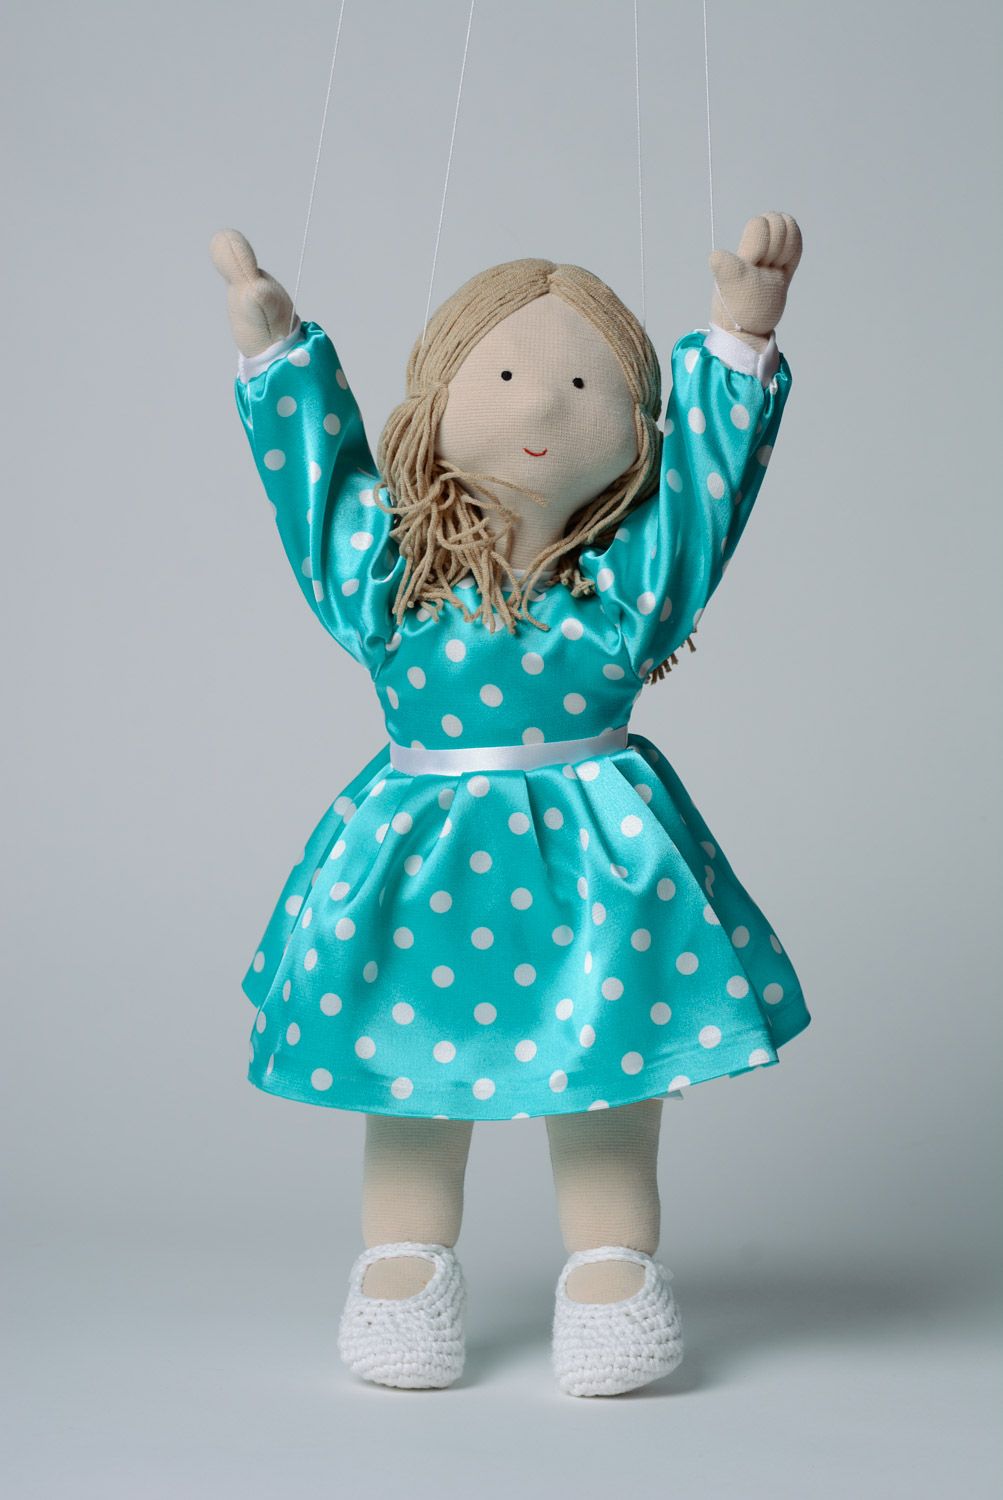 Ручная марионетка кукла ручной работы трикотажная в платье в горошек фото 1